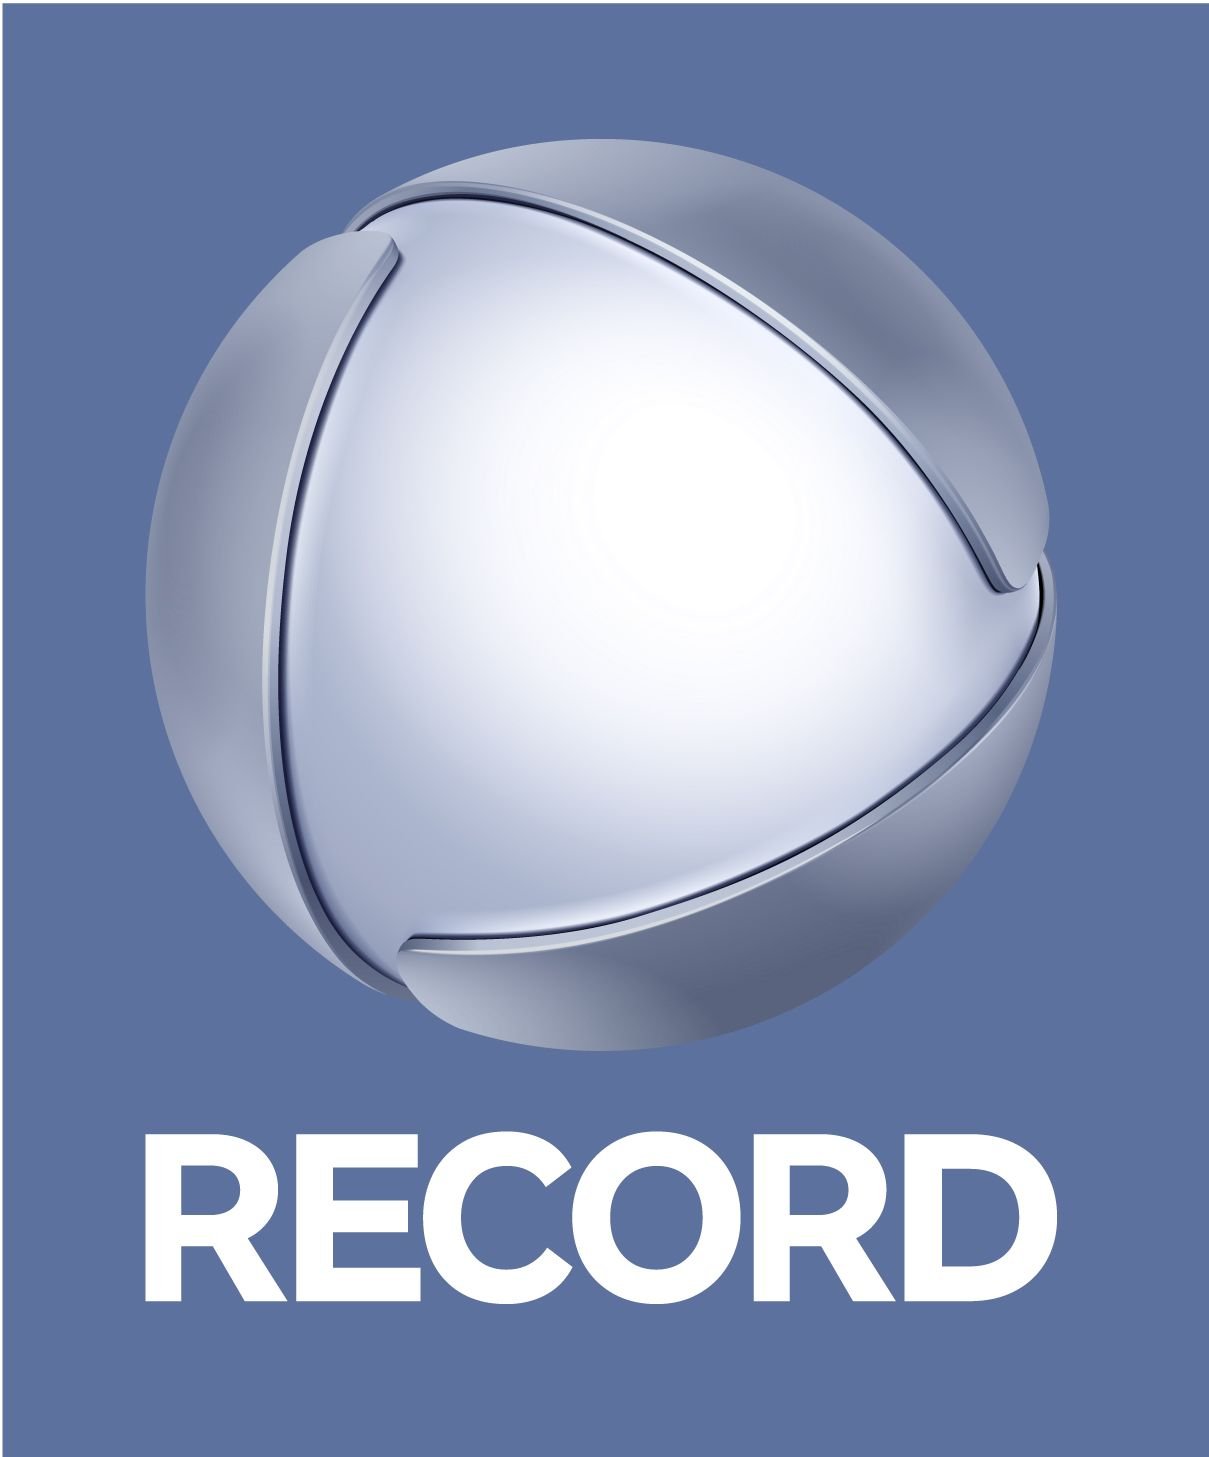 Record News completa 15 anos com nova identidade visual e apresenta  crescimento de audiência de 150%